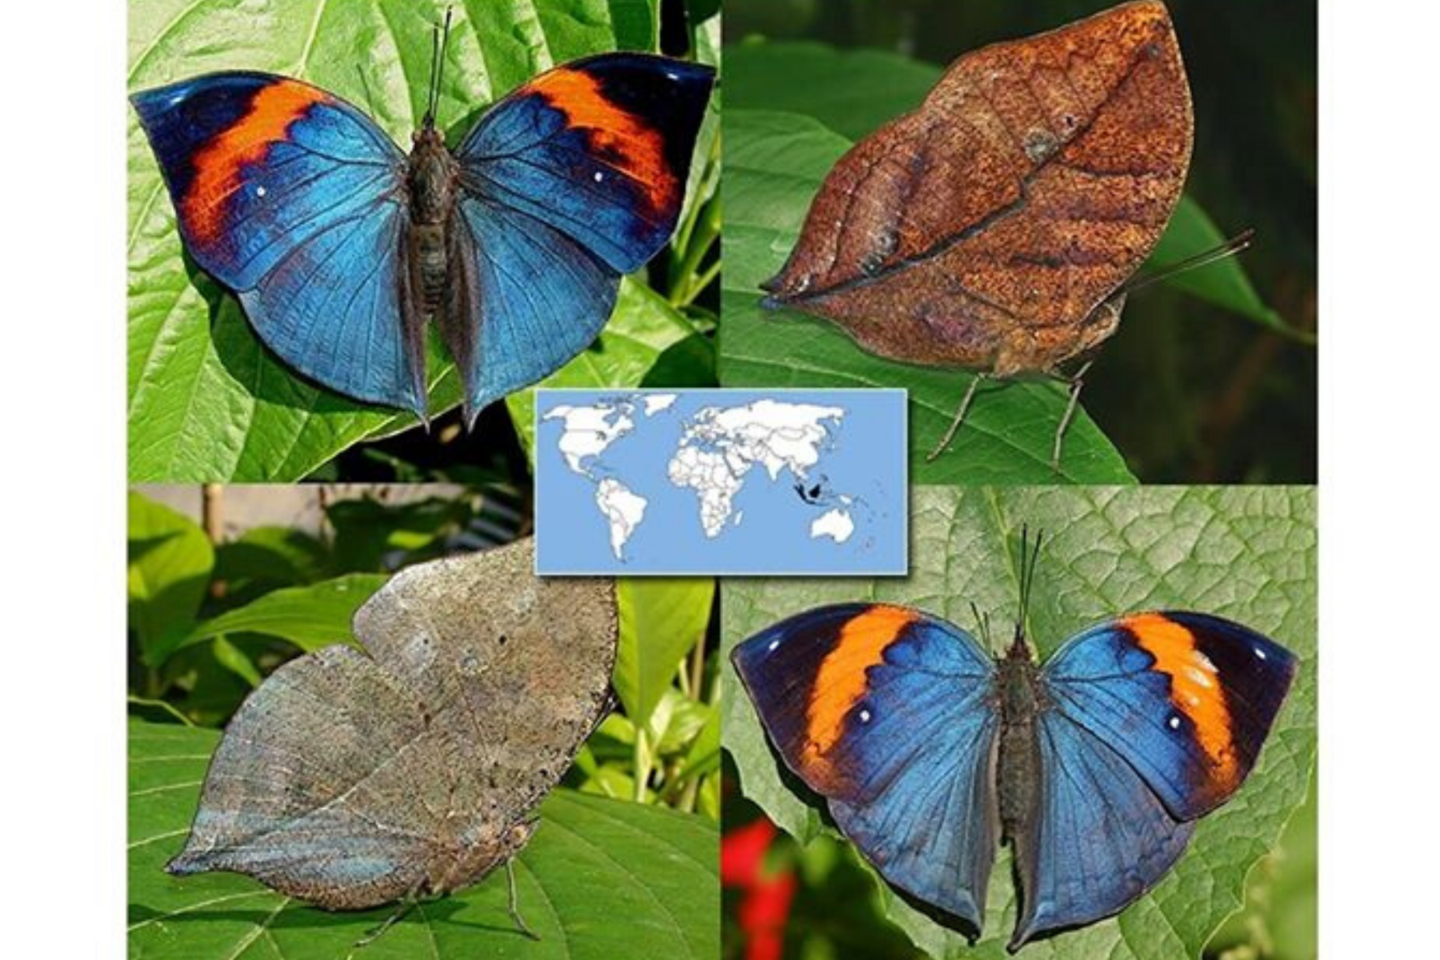  Mokslininkai šią drugelių rūšį apibūdina, kaip geriausią kamufliažo pavyzdį gamtoje.<br> „Gyvų tropinių drugelių parodos“ nuotr.